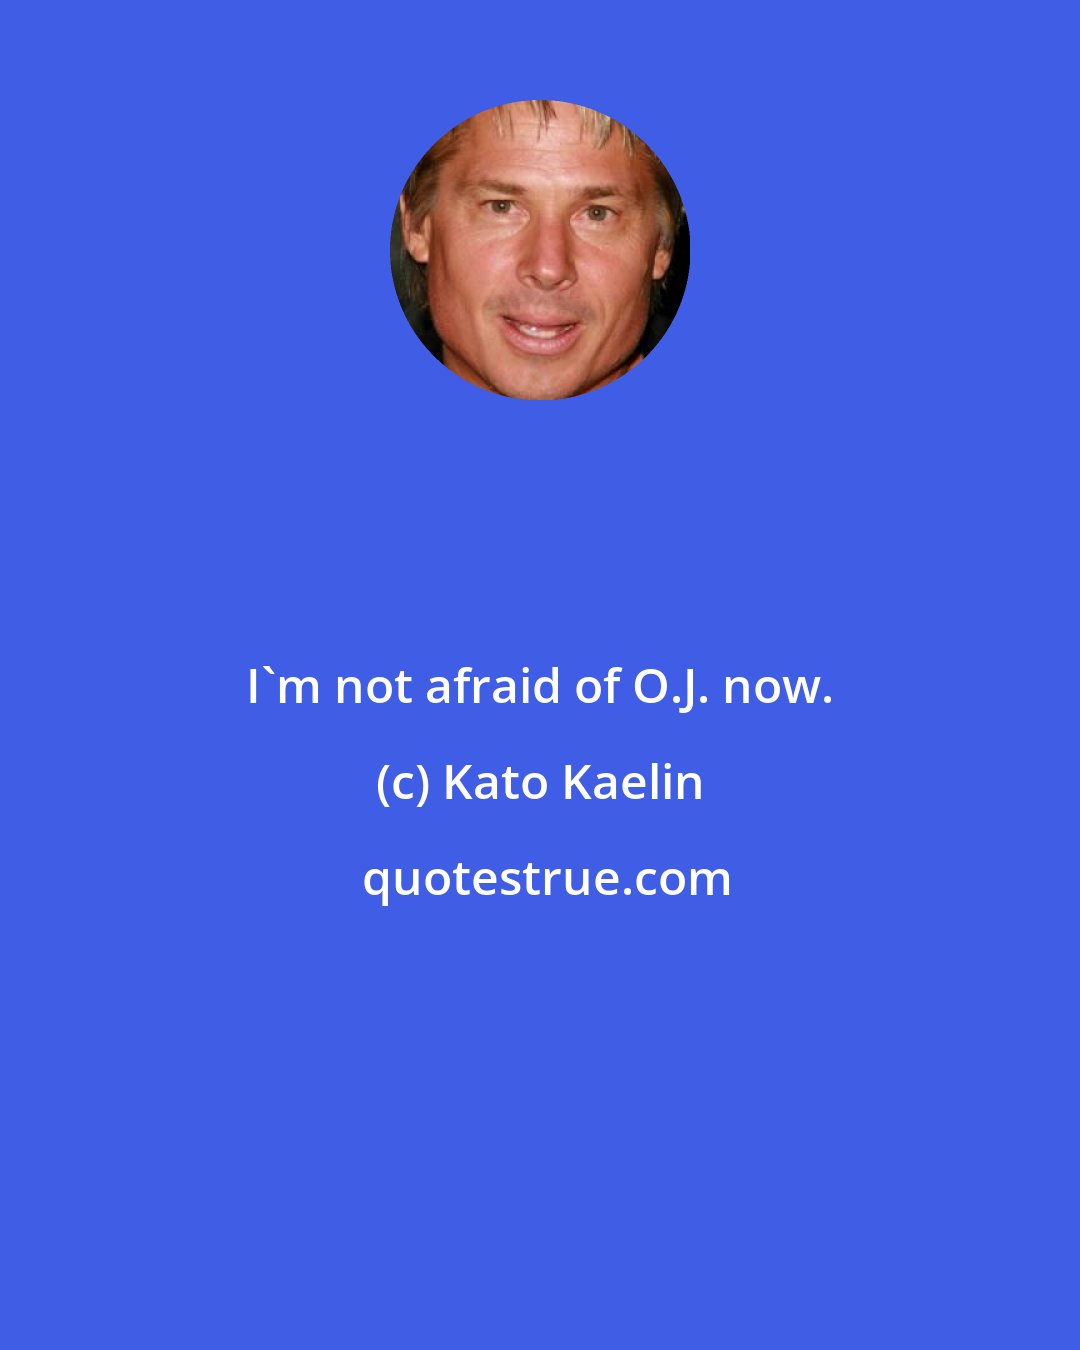 Kato Kaelin: I'm not afraid of O.J. now.